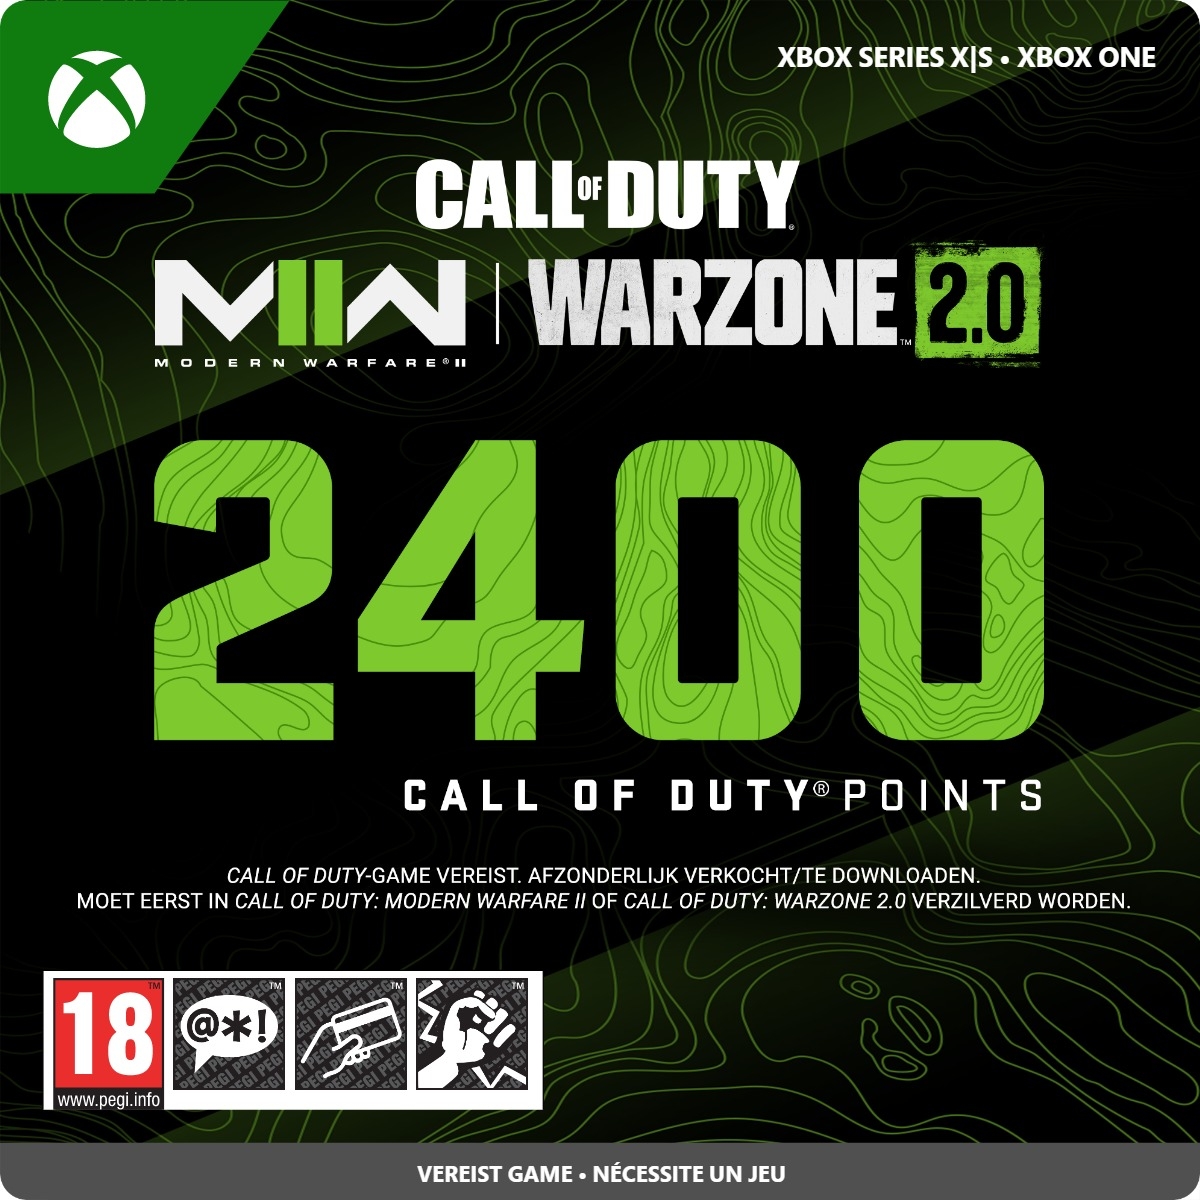 2400 Xbox Call of Duty Points (Direct Digitaal Geleverd) XboxLiveKaarten.nl